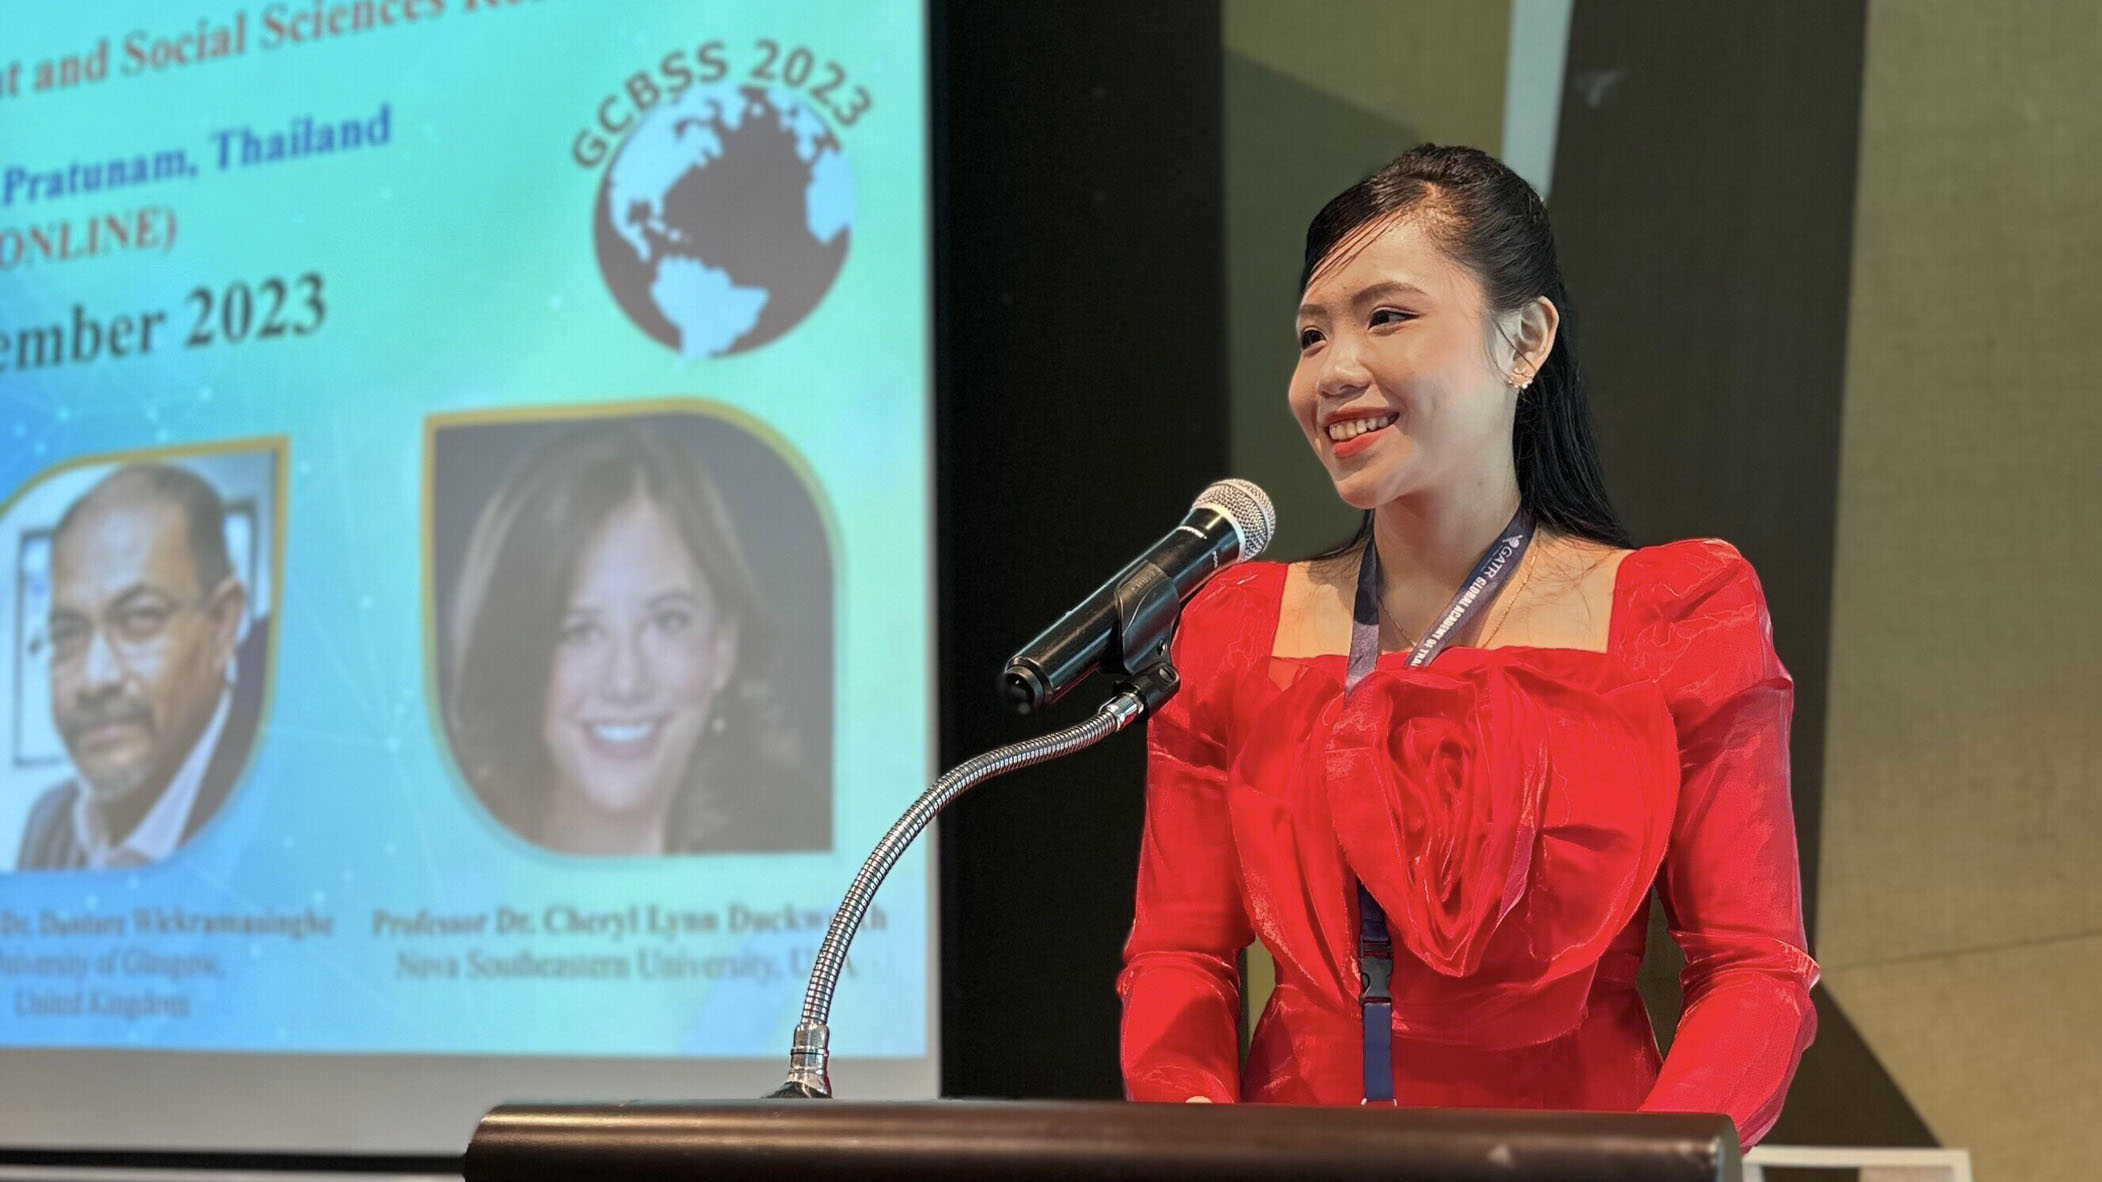 Hành trình khẳng định bản thân của cô nữ sinh Đại học FPT Cần Thơ Nguyễn Thị Mỹ Duyên trong Hội nghị GCBSS tại Thái Lan